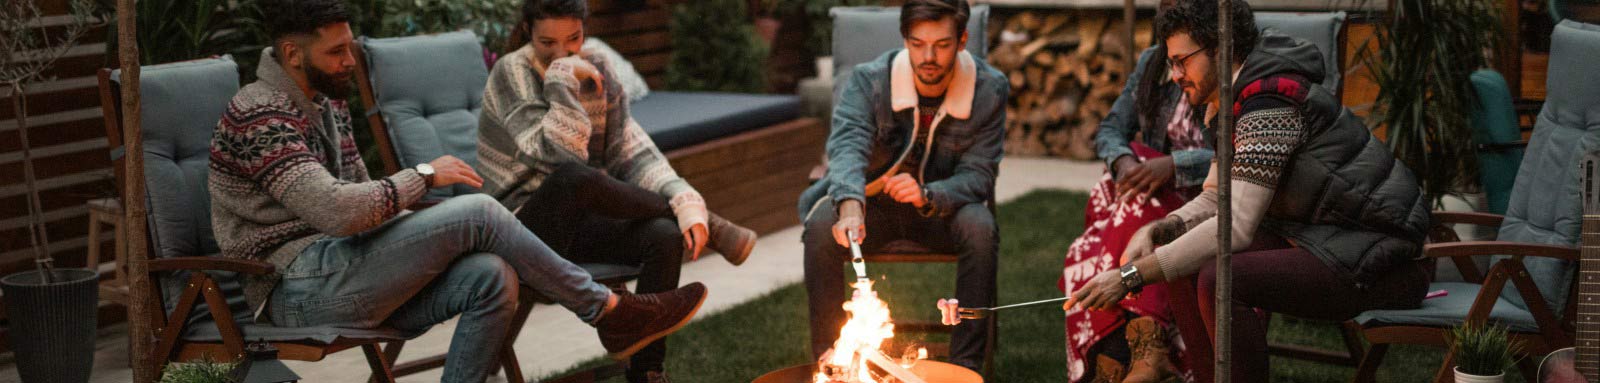 Friends sitting around a fire